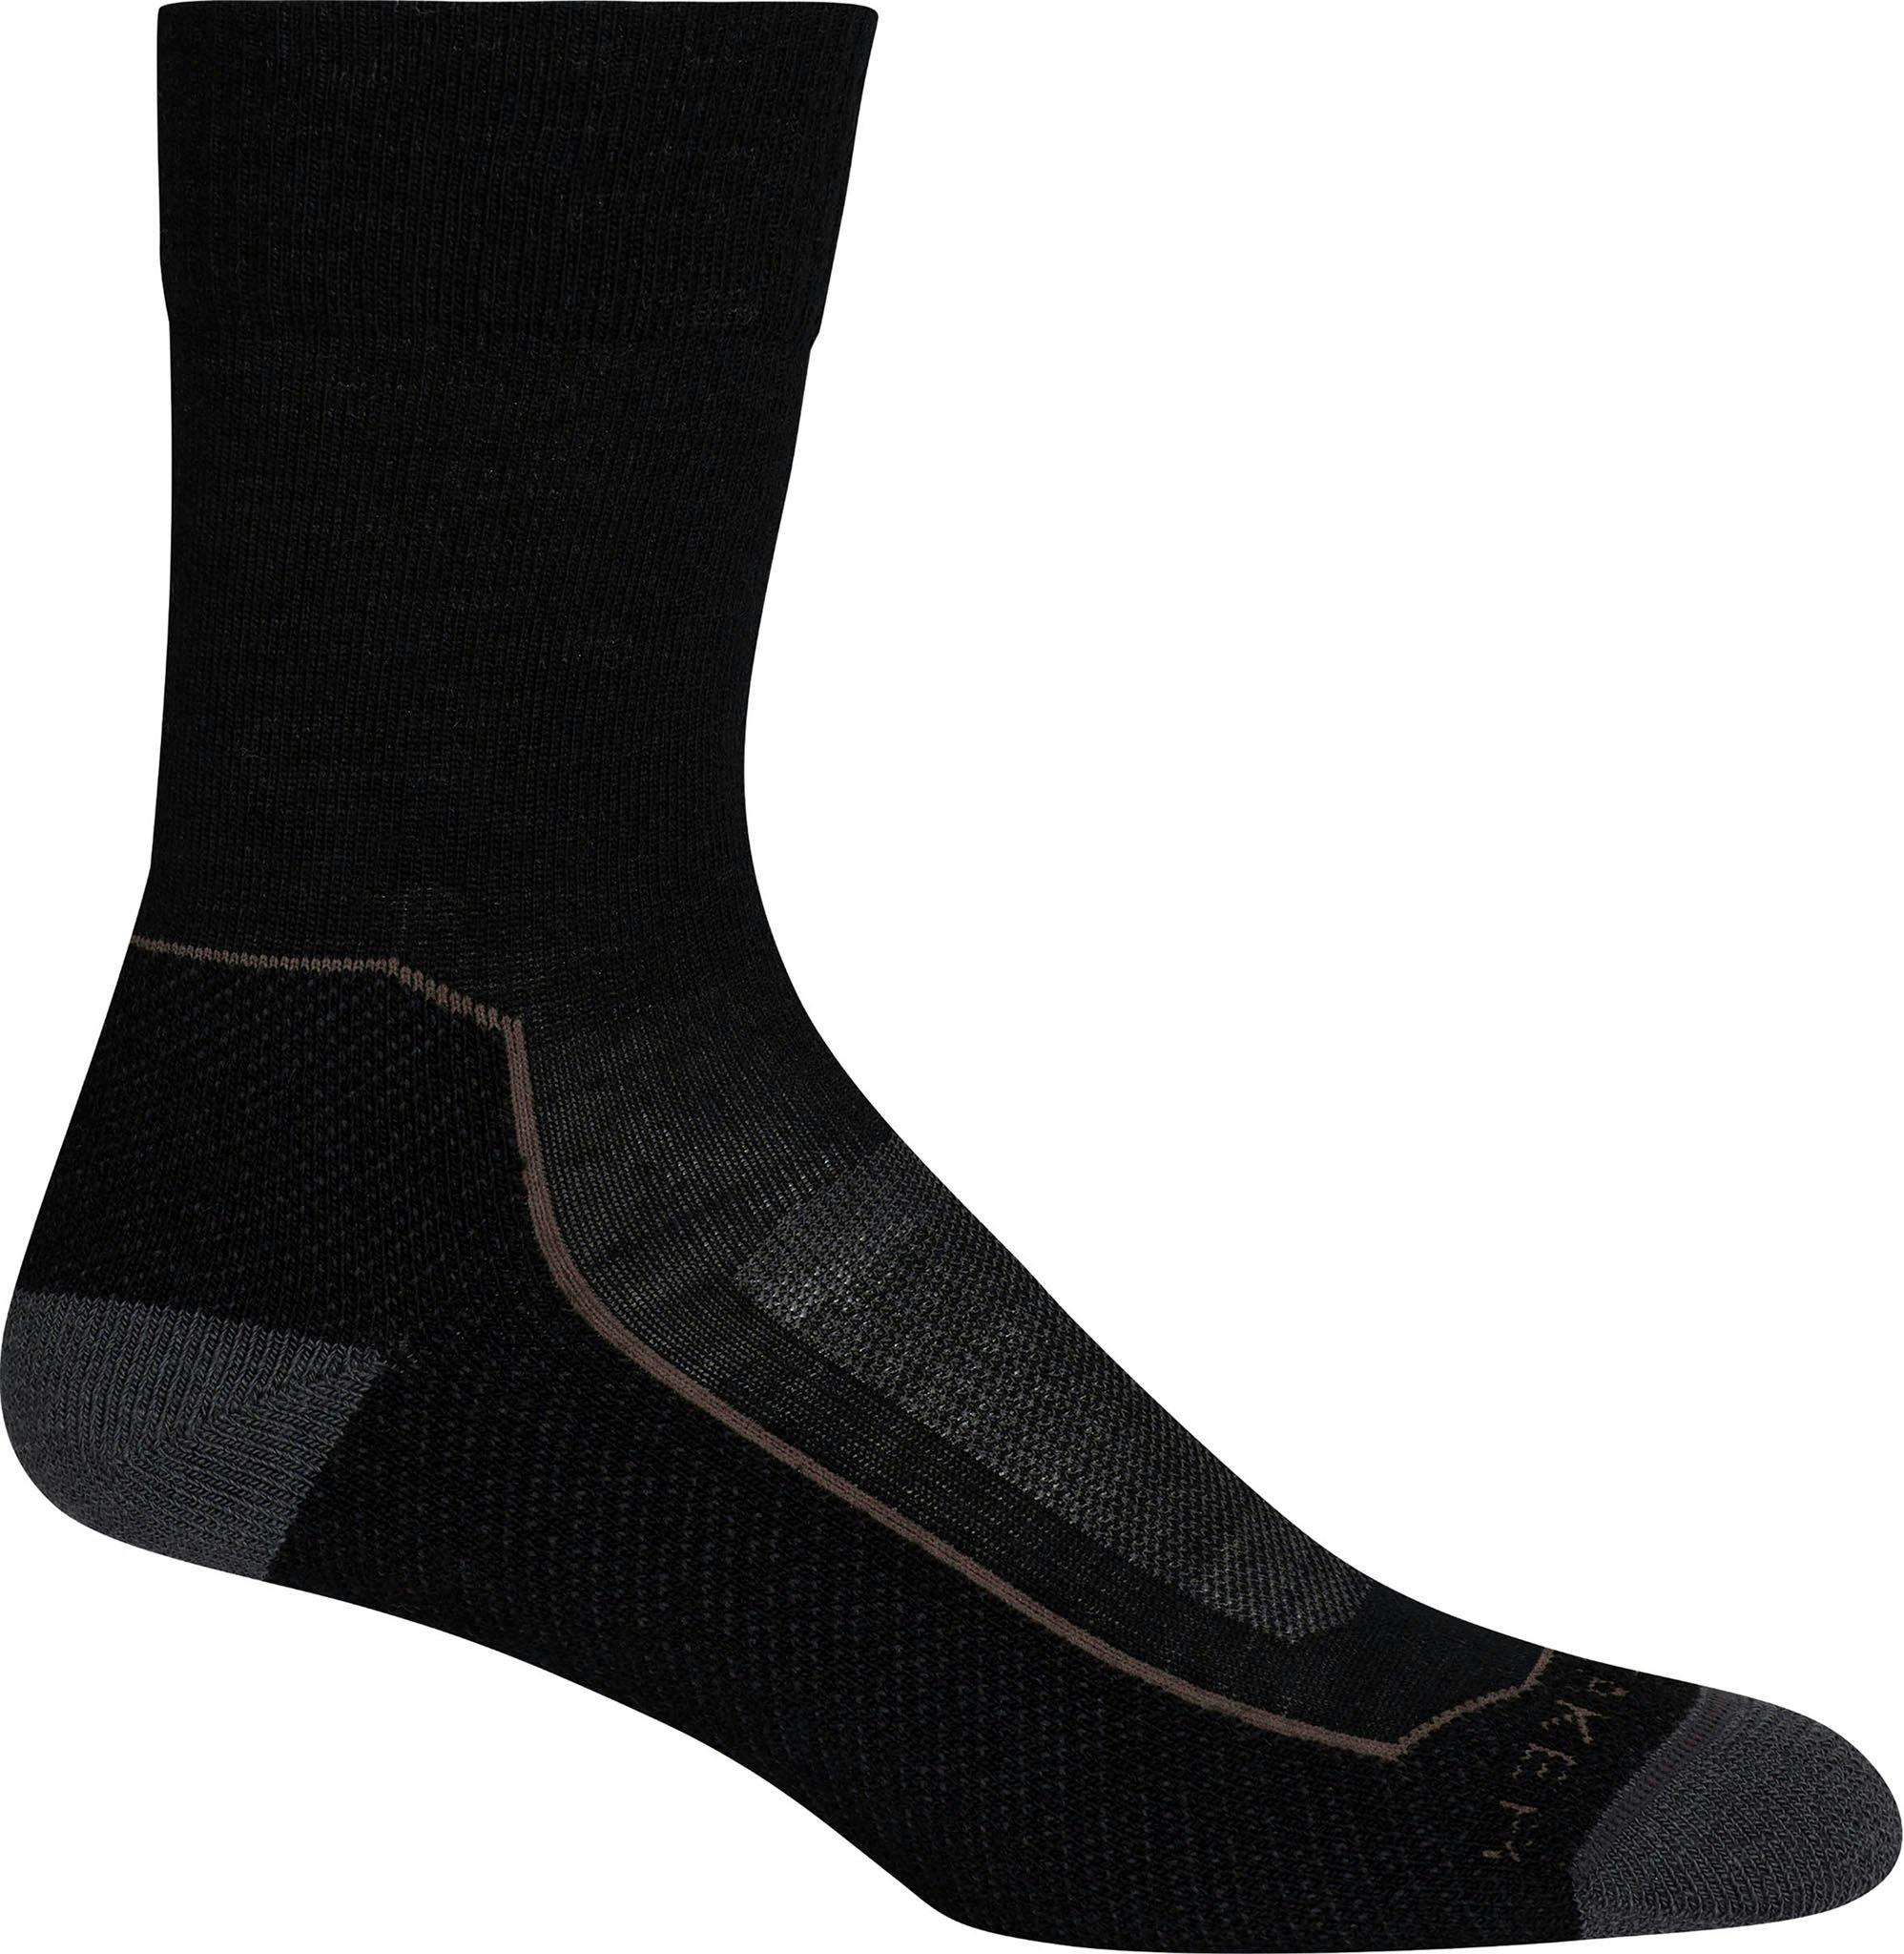 Product image for Hike+ Light Crew Socks - Women's